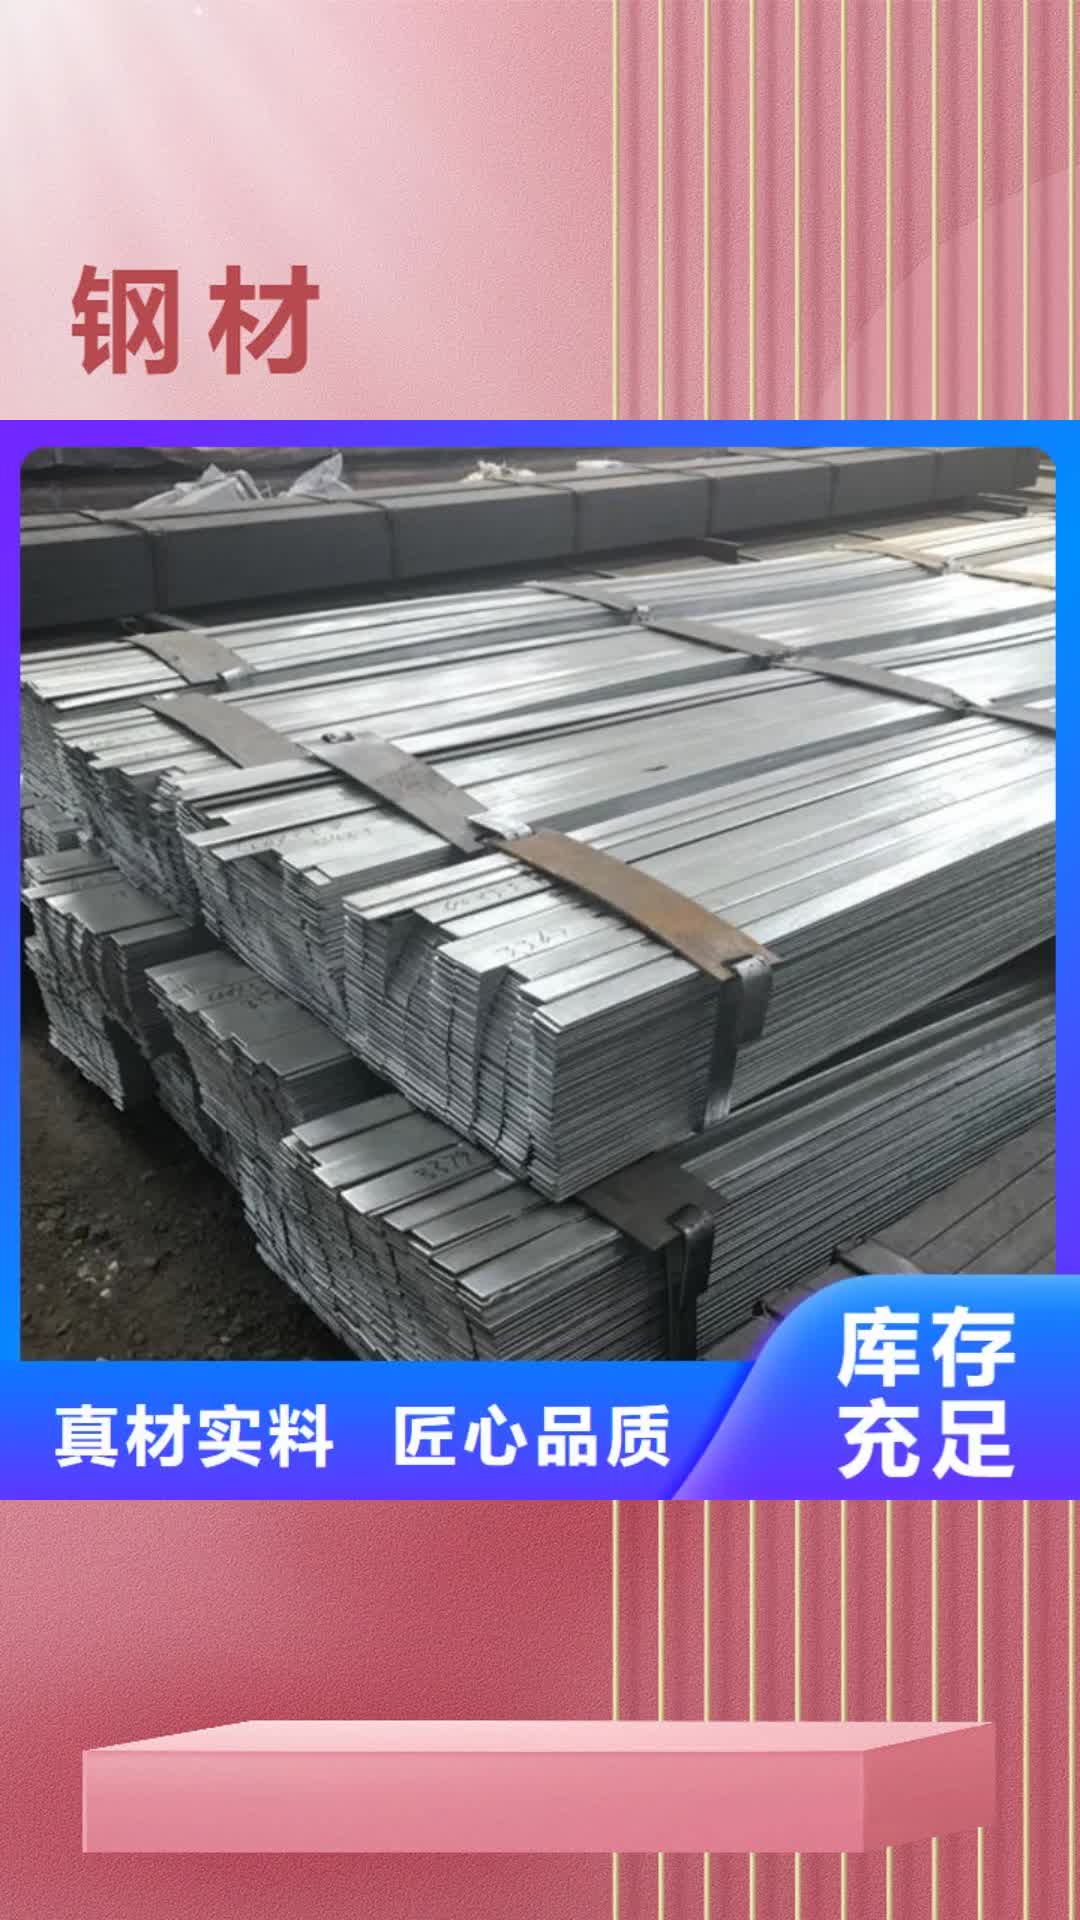 北京 钢材 【钢板】厂家品控严格